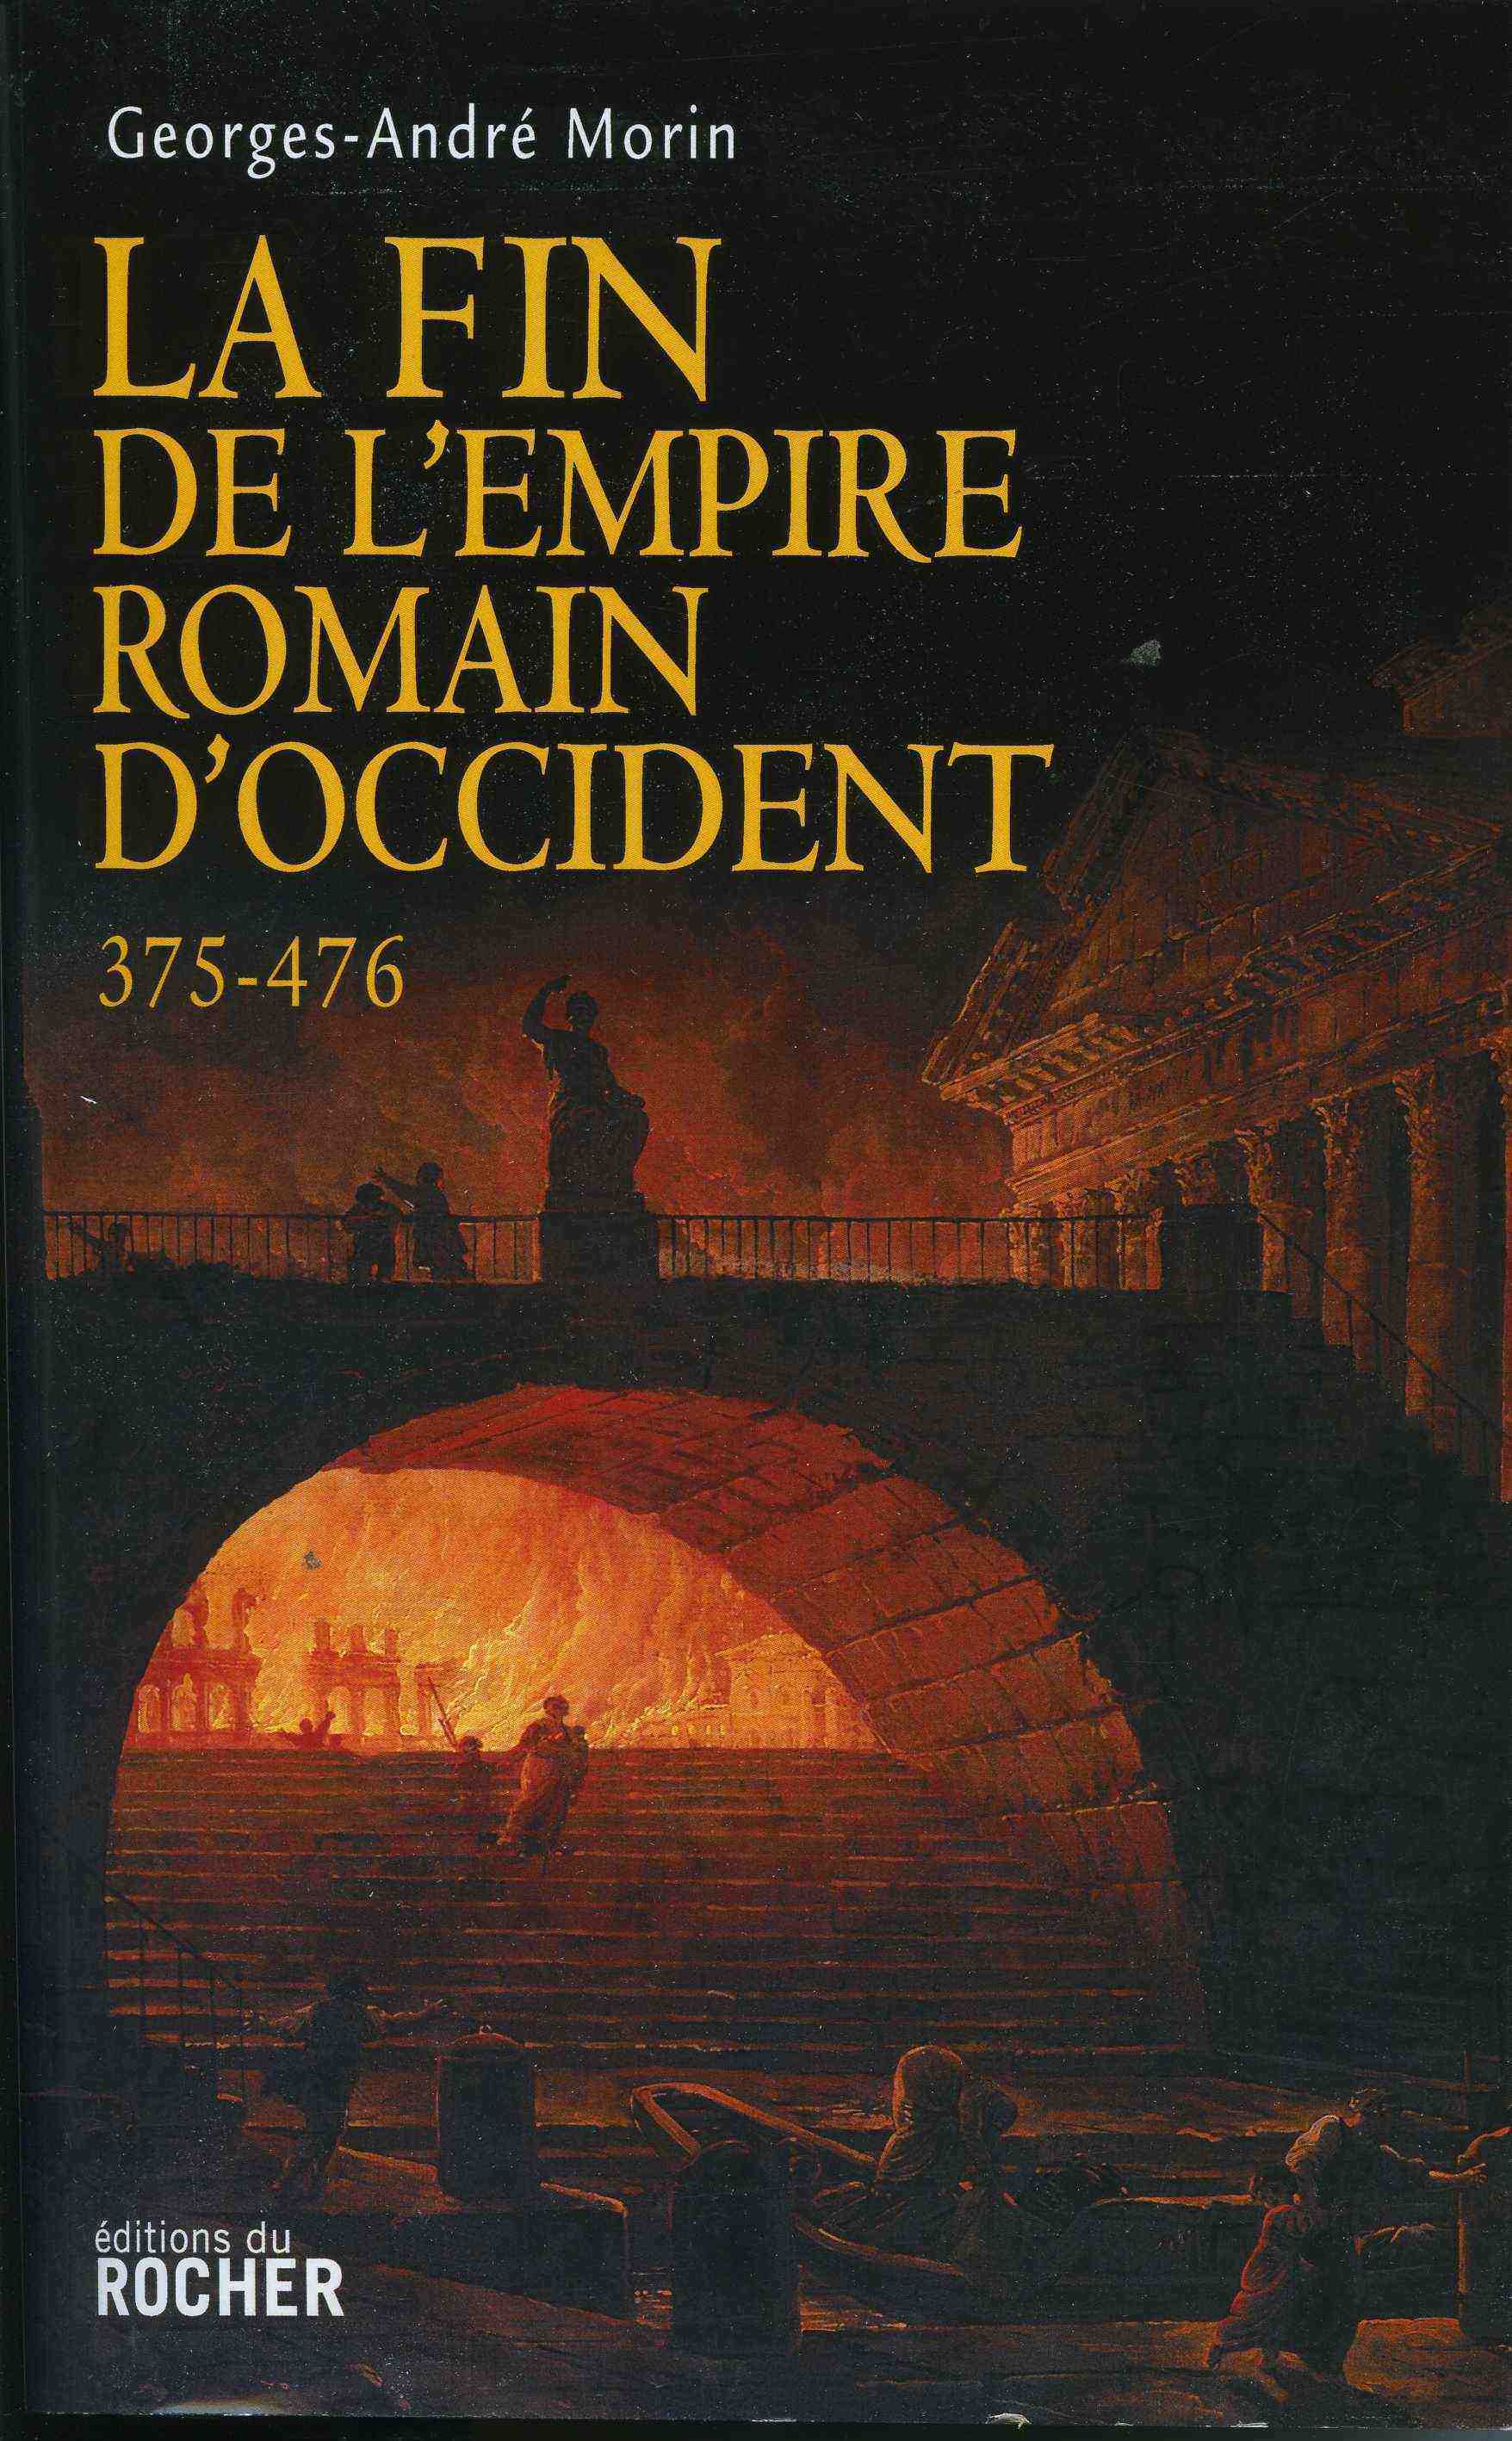 La Fin de l'Empire romain d'Occident 375-476, 2014, 448 p.